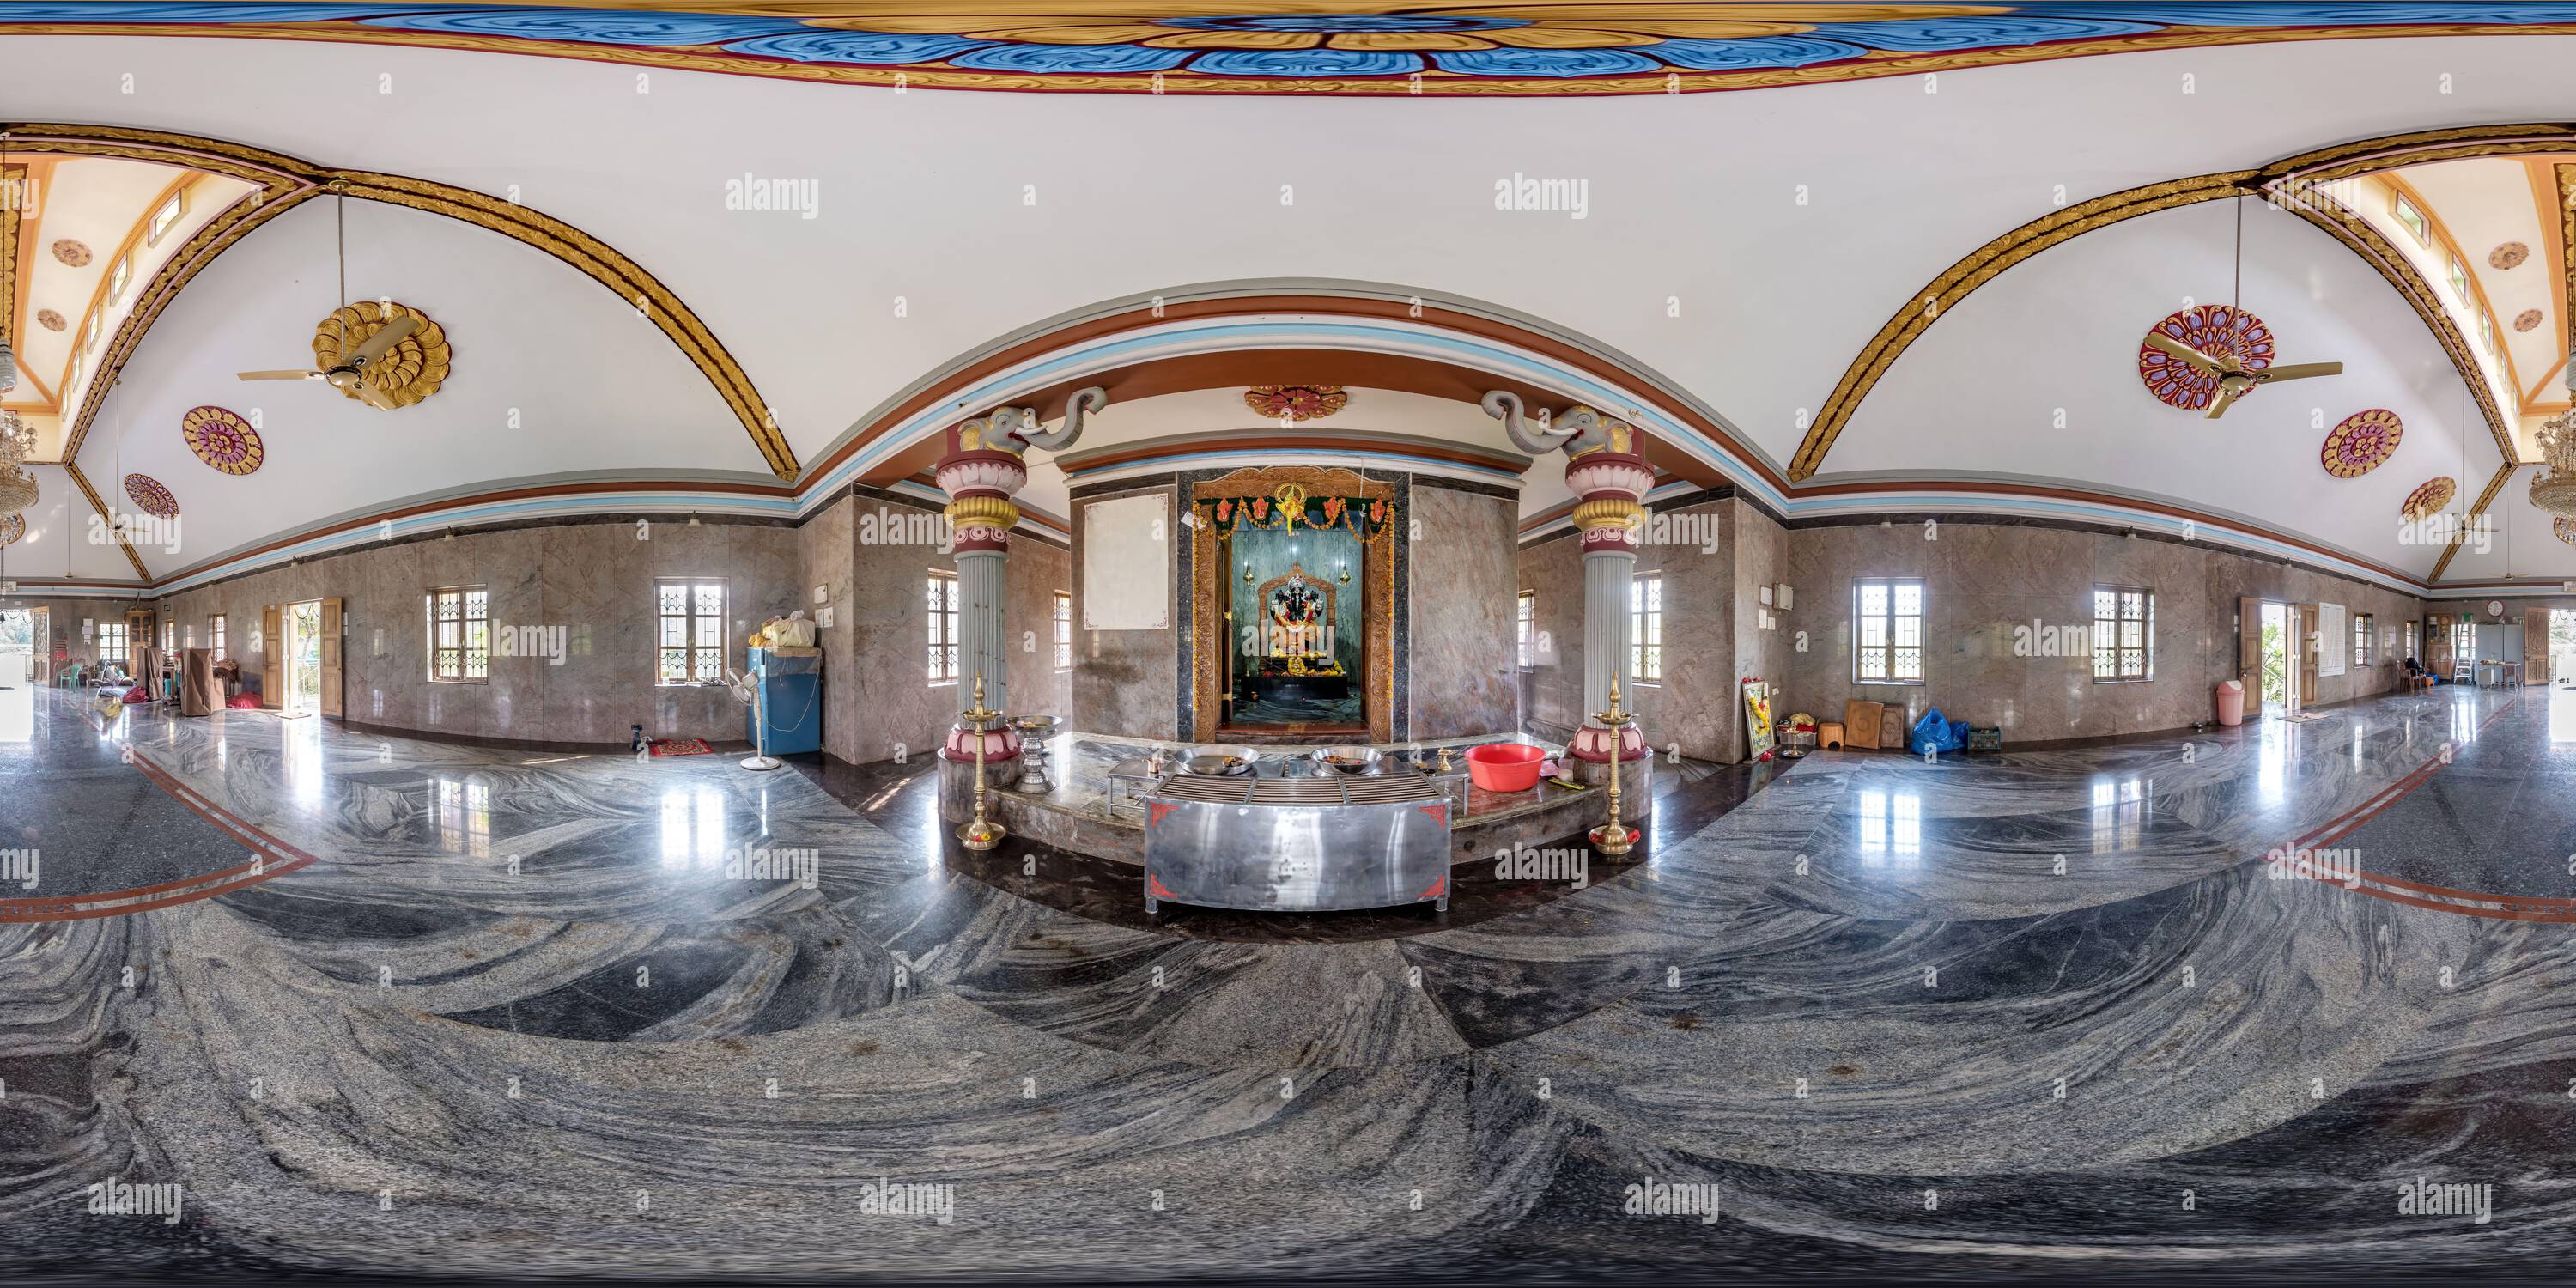 Vue panoramique à 360° de Full hdri 360 panorama à l'intérieur du temple hindou de ganesh dieu de sagesse et de prospérité avec tête d'éléphant dans le village tropical indien en pr équirectangulaire